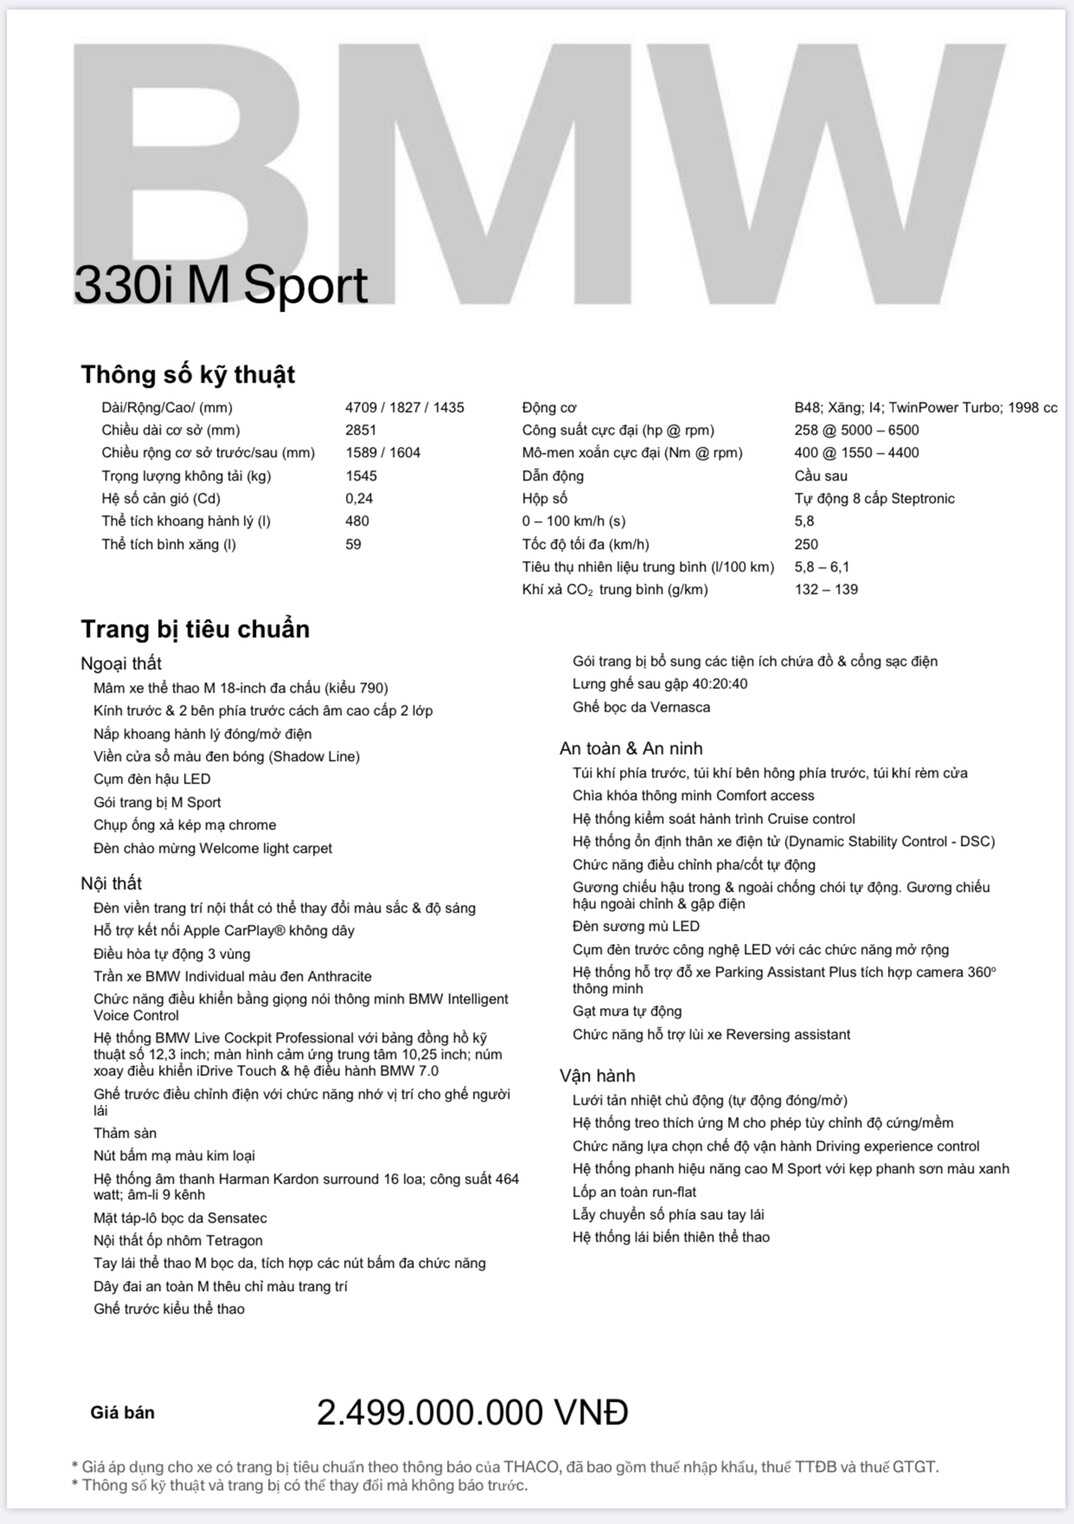 Thông số kỹ thuật của BMW 330i M Sport